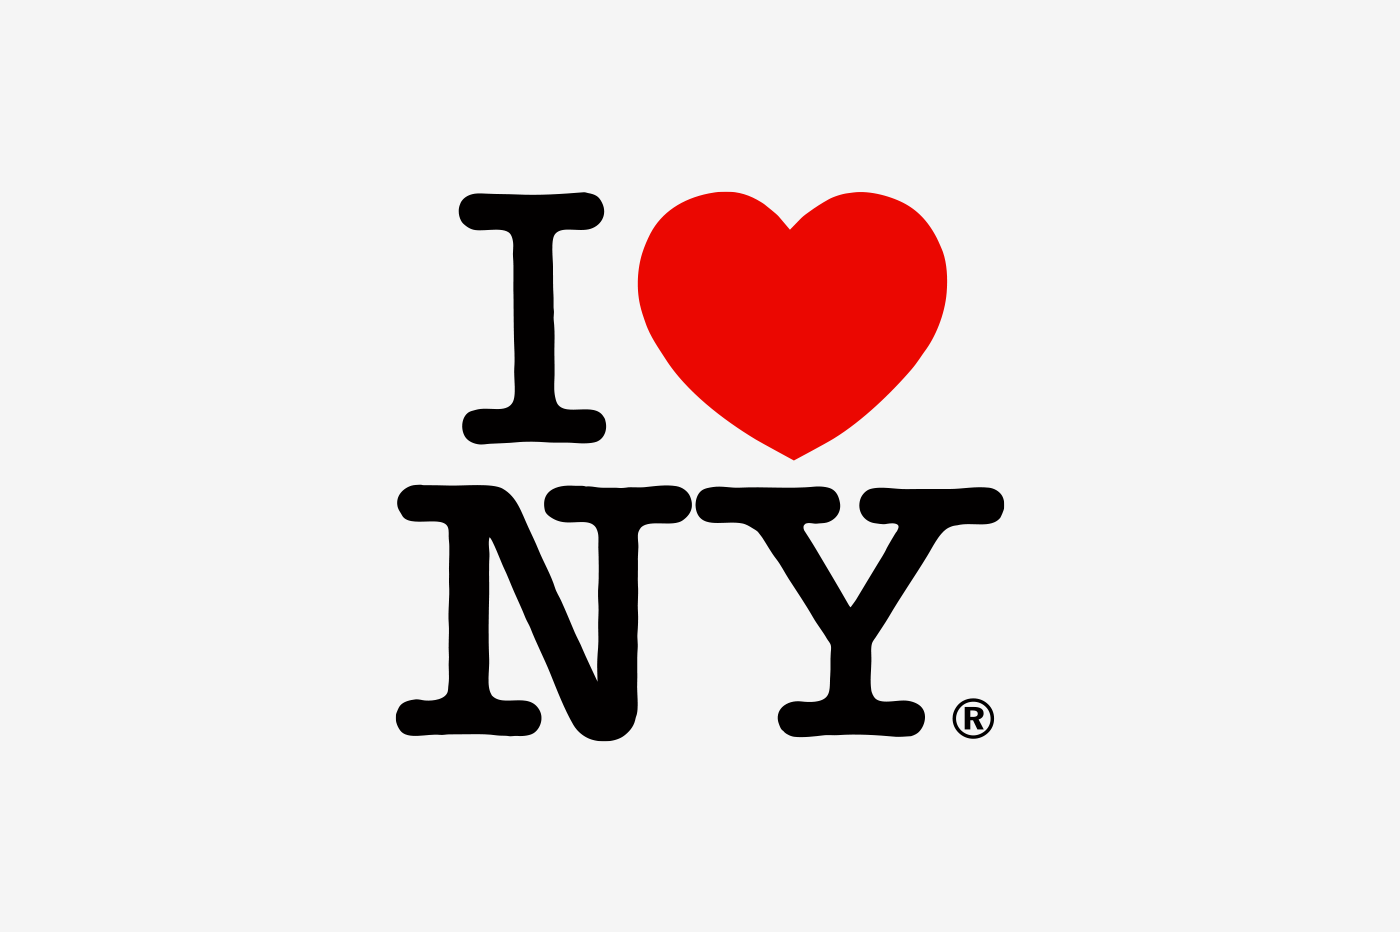 The original "I Love NY" logo